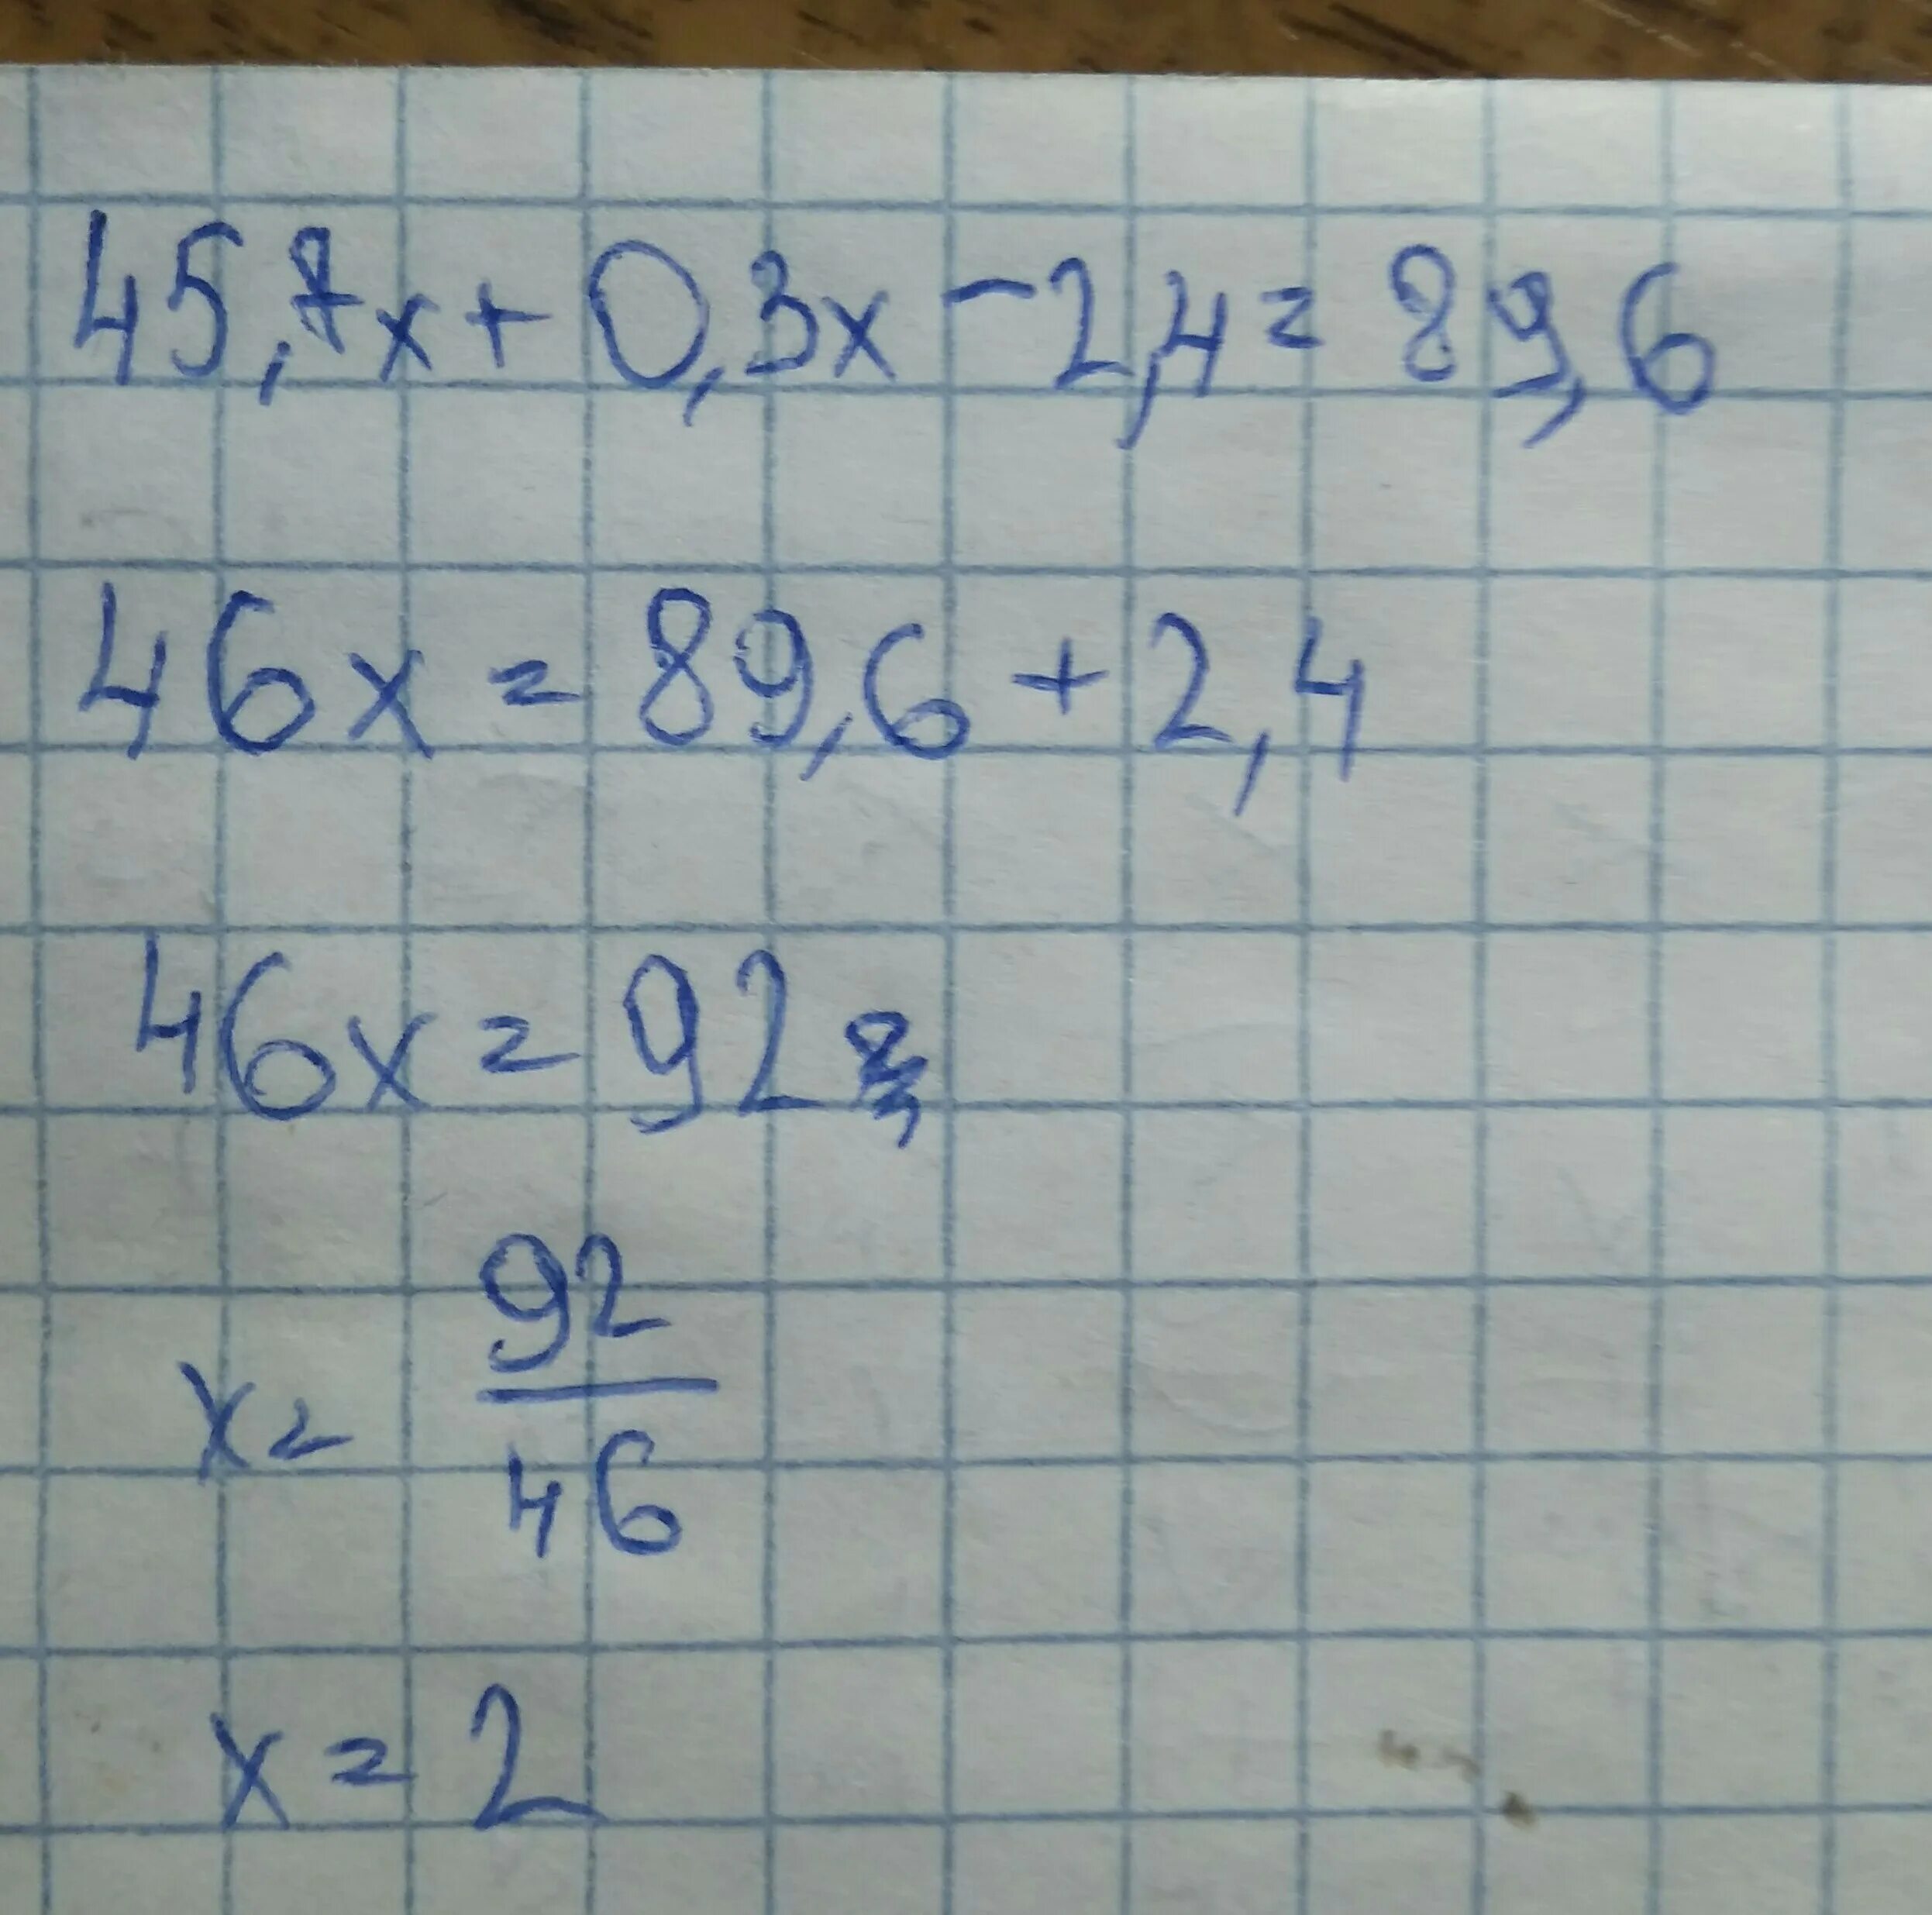 45 7 ответ. 45.7Х+0.3Х-2.4 89.6 решение. Решите уравнение 45.7х+0.3х-2.4 89.6. 45 7х+0.3-2.4 89.6. 45 7х 0 3х-2 4 89 6.